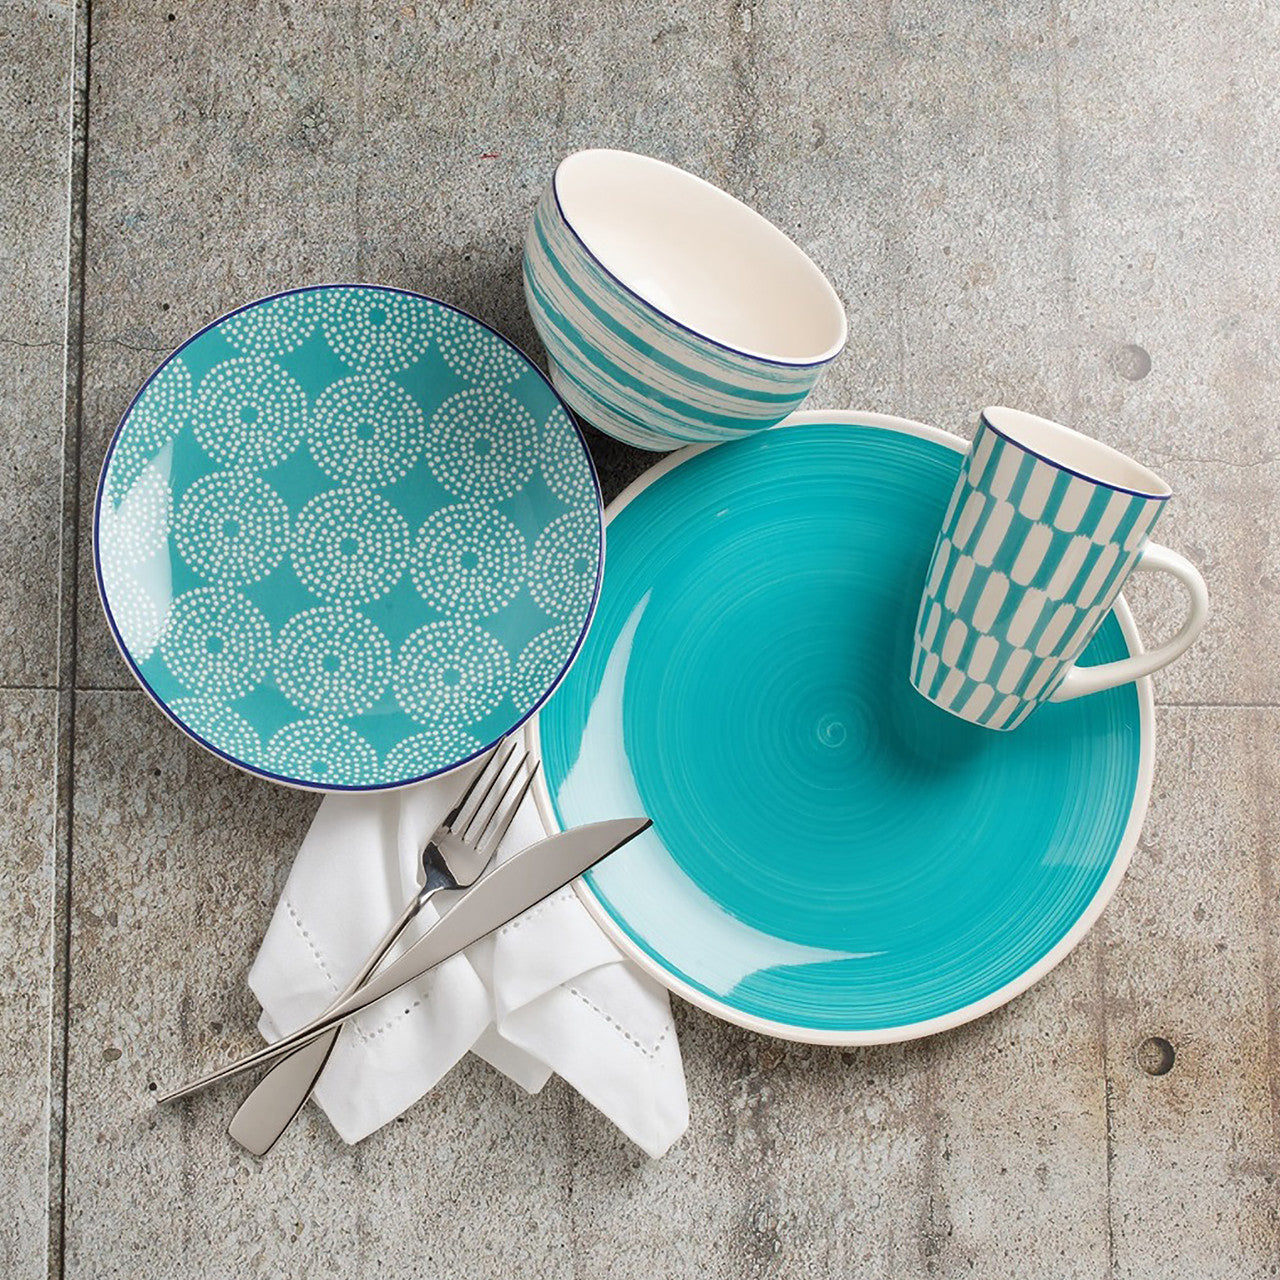 Simpatico 16 Piece Dinnerware Set in Turquoise - Euro Ceramica 